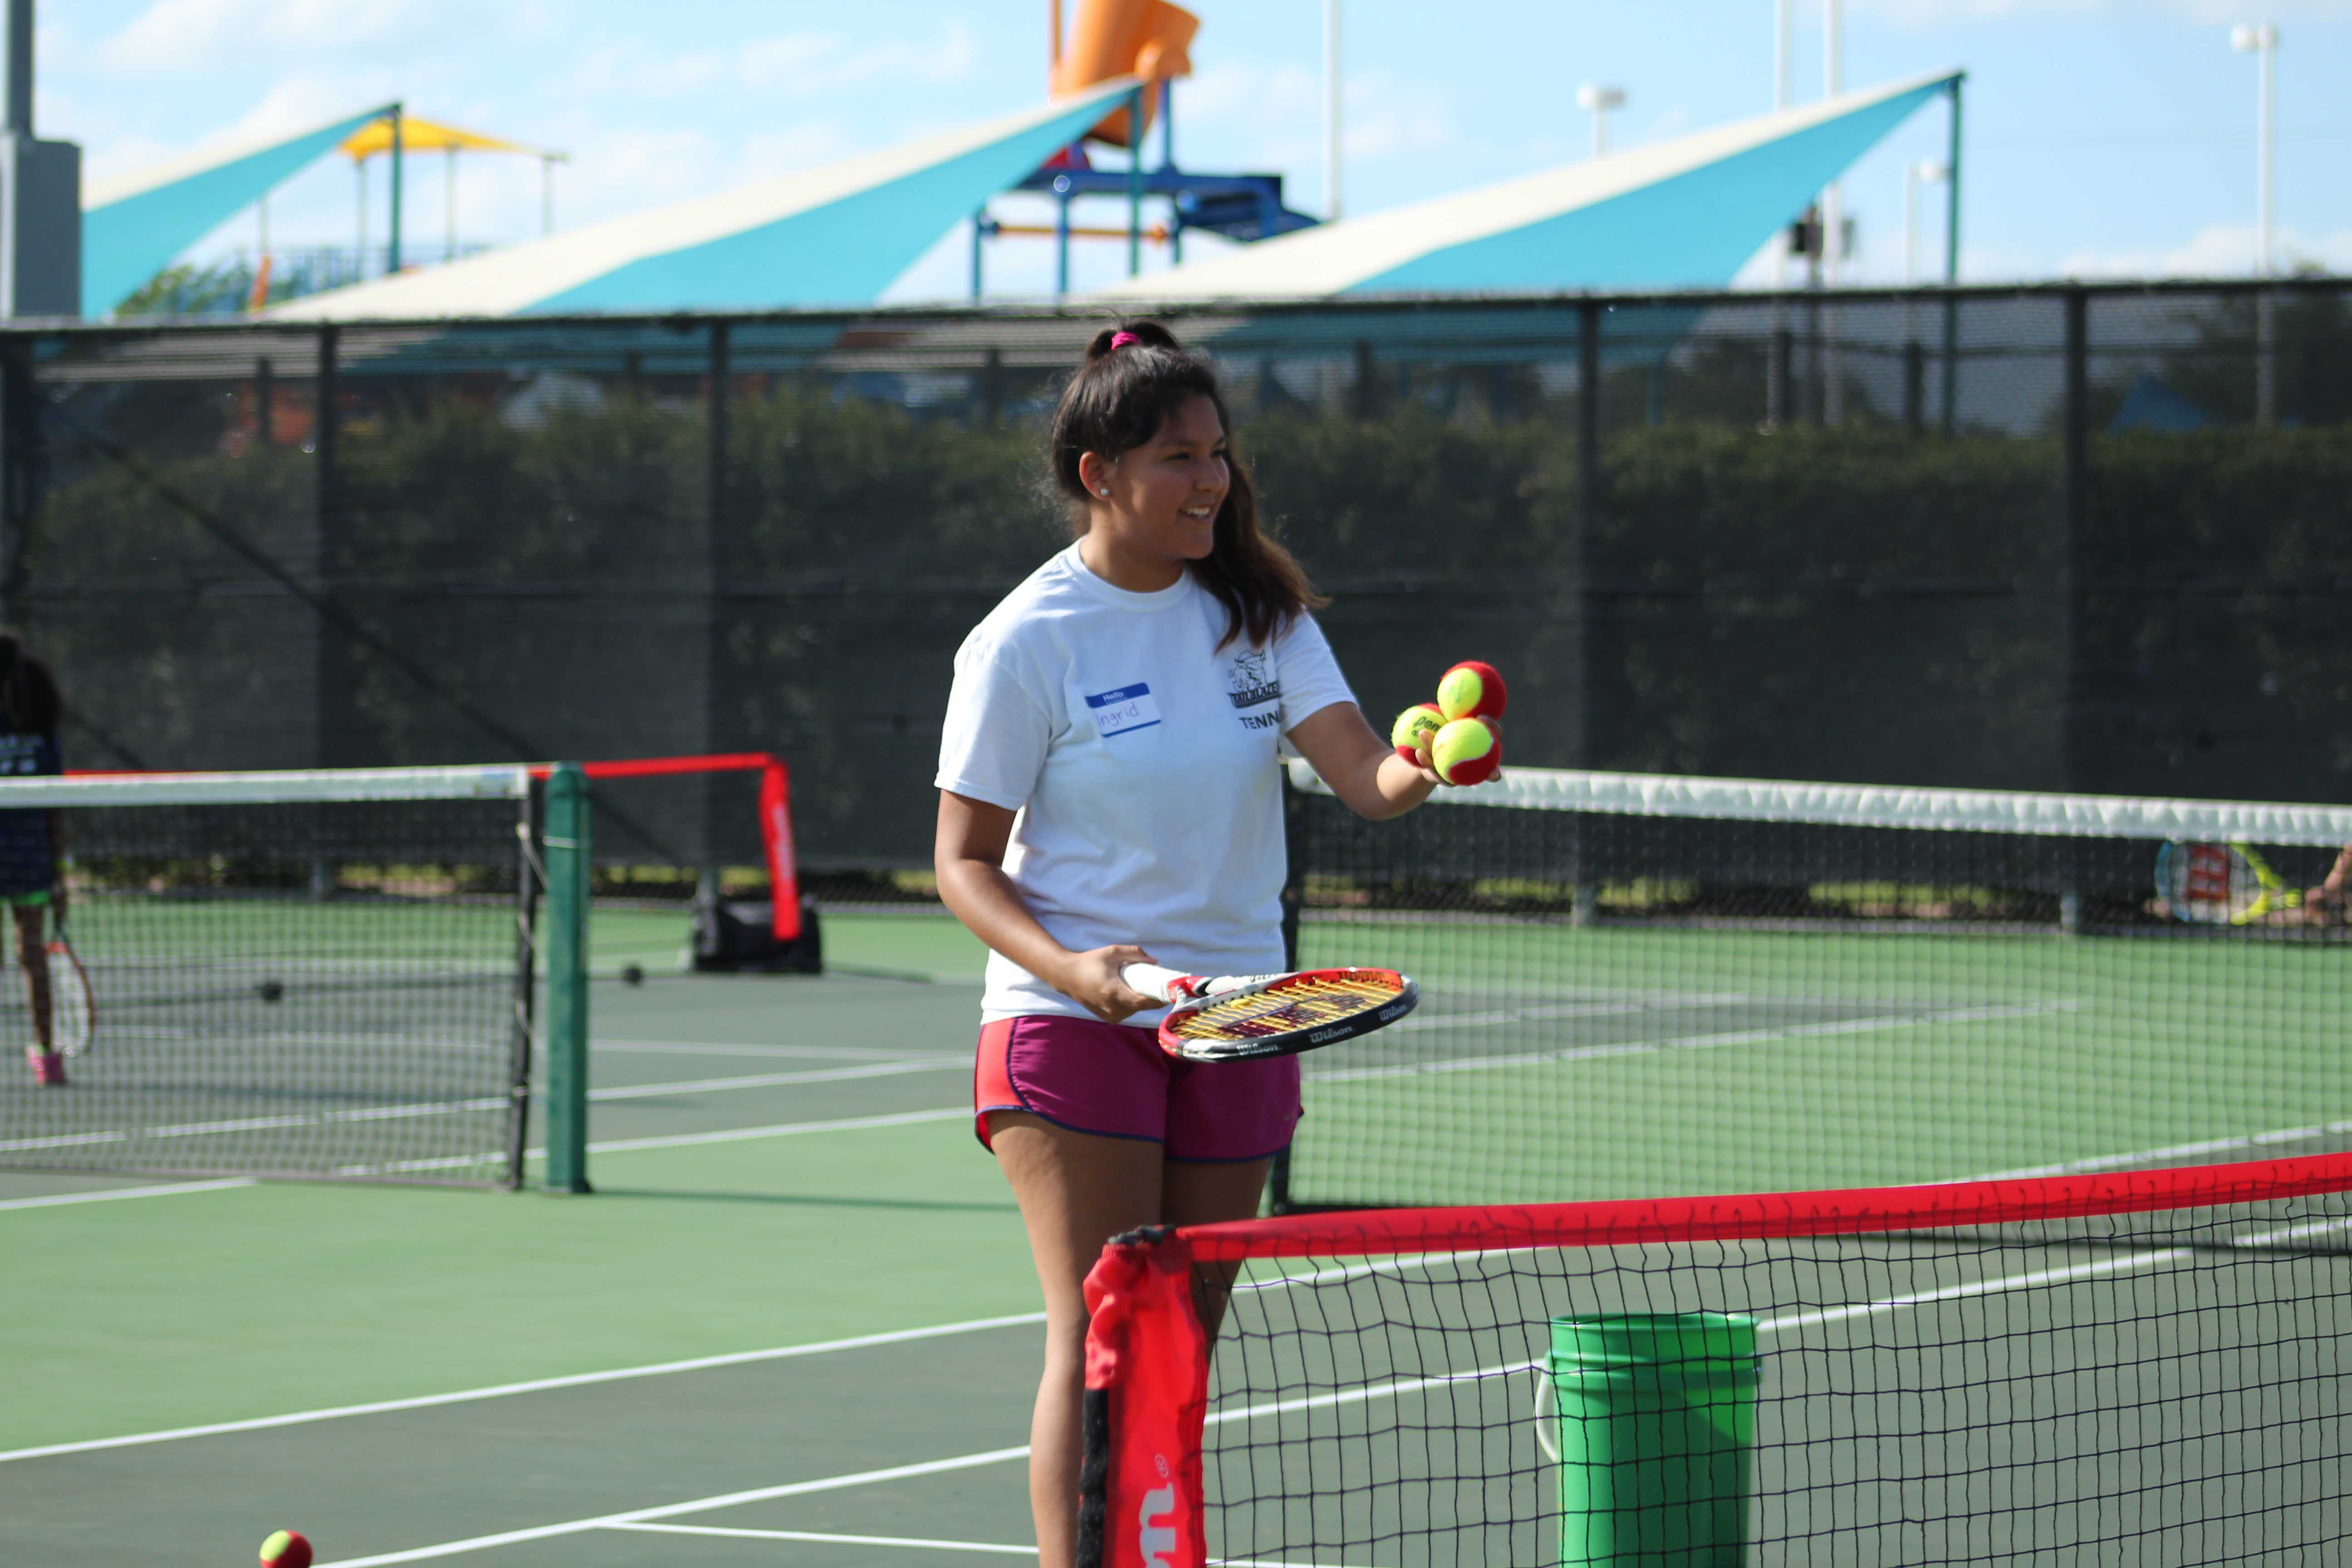 NE student Ingrid Pineda serves tennis balls for children to practice their backhand swing.